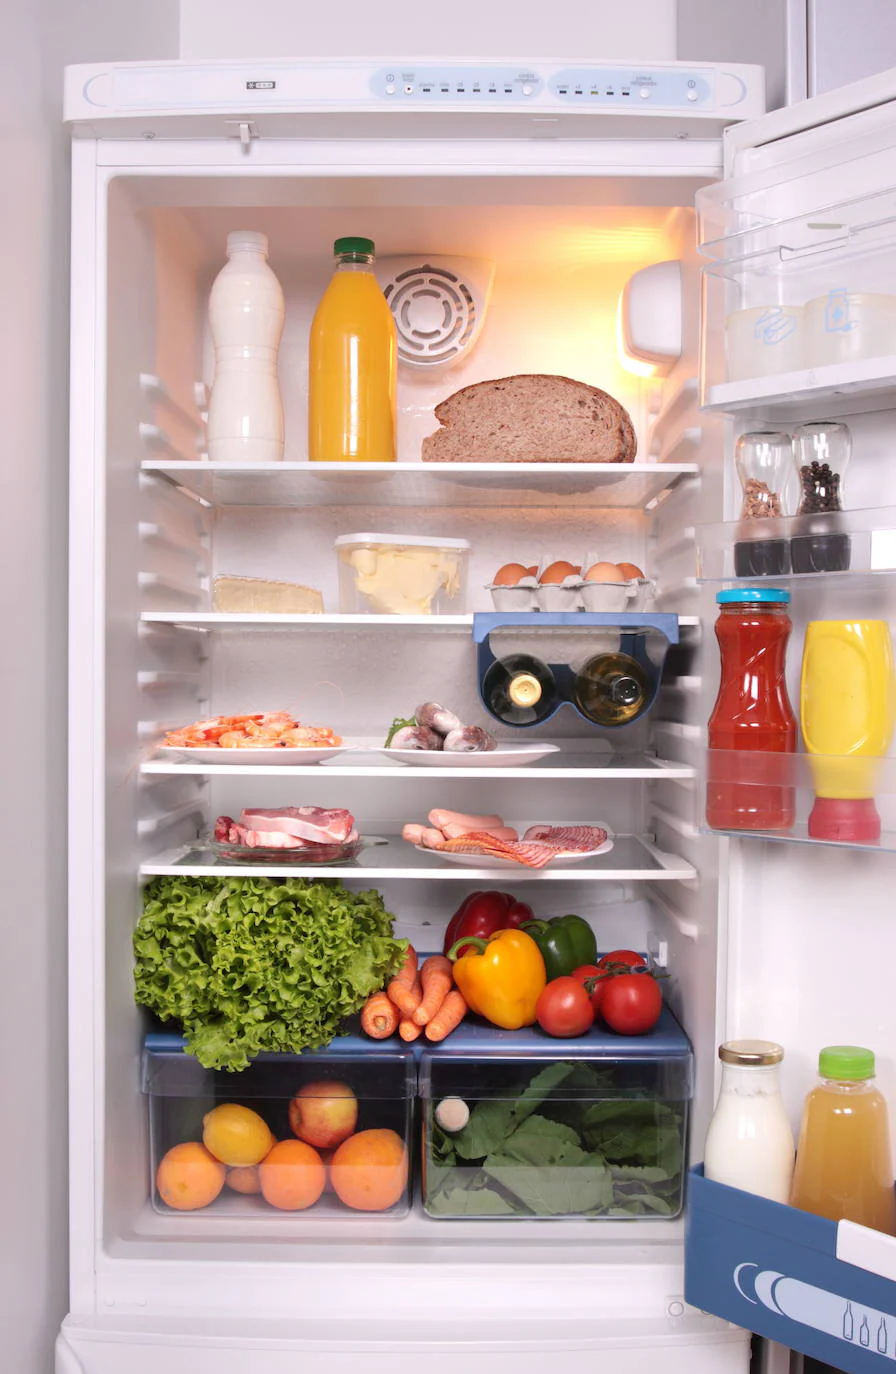 Así se ordenan los alimentos en el frigorífico para conservarlos mejor